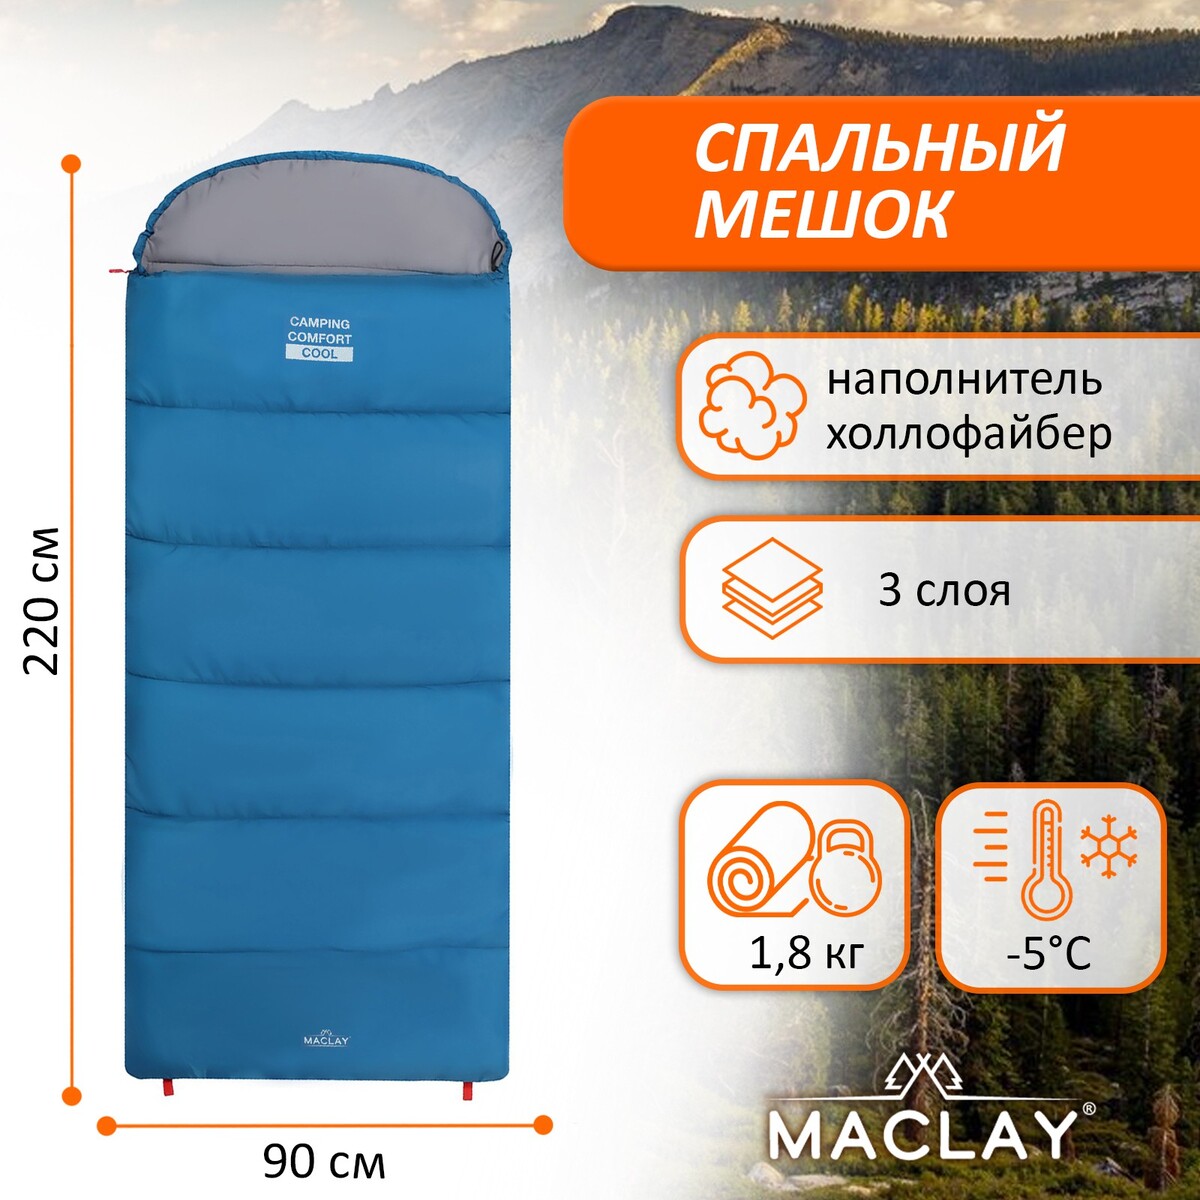 Спальный мешок maclay camping comfort cool, 3-слойный, правый, 220х90 см, -5/+10°с